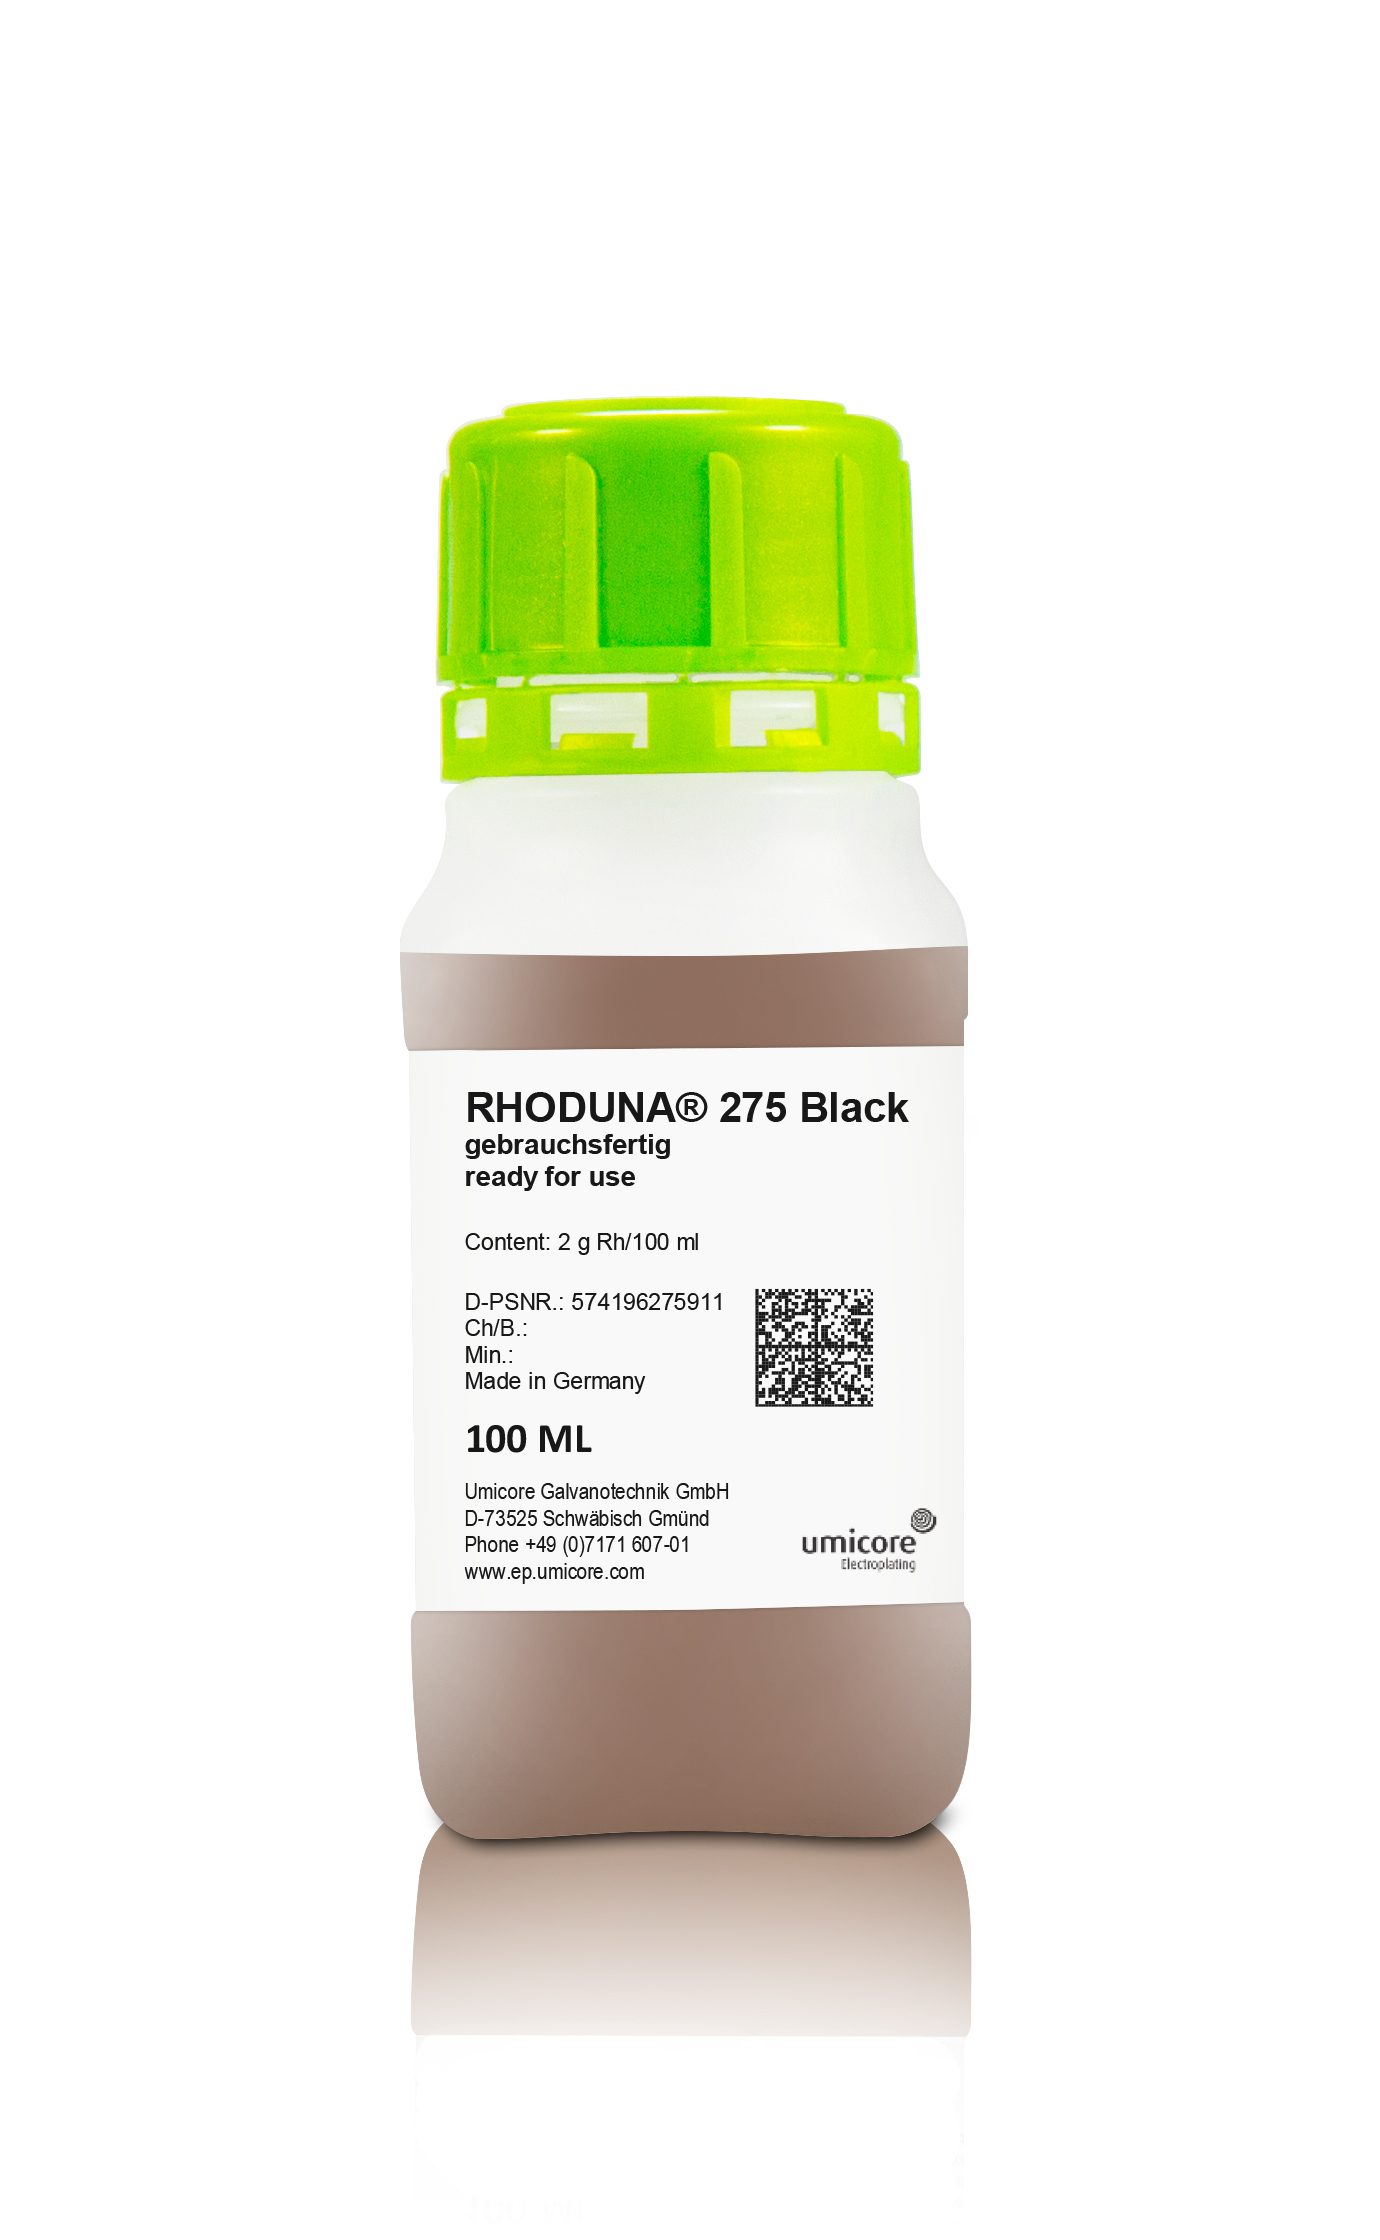 Black rhodium bath Wieland